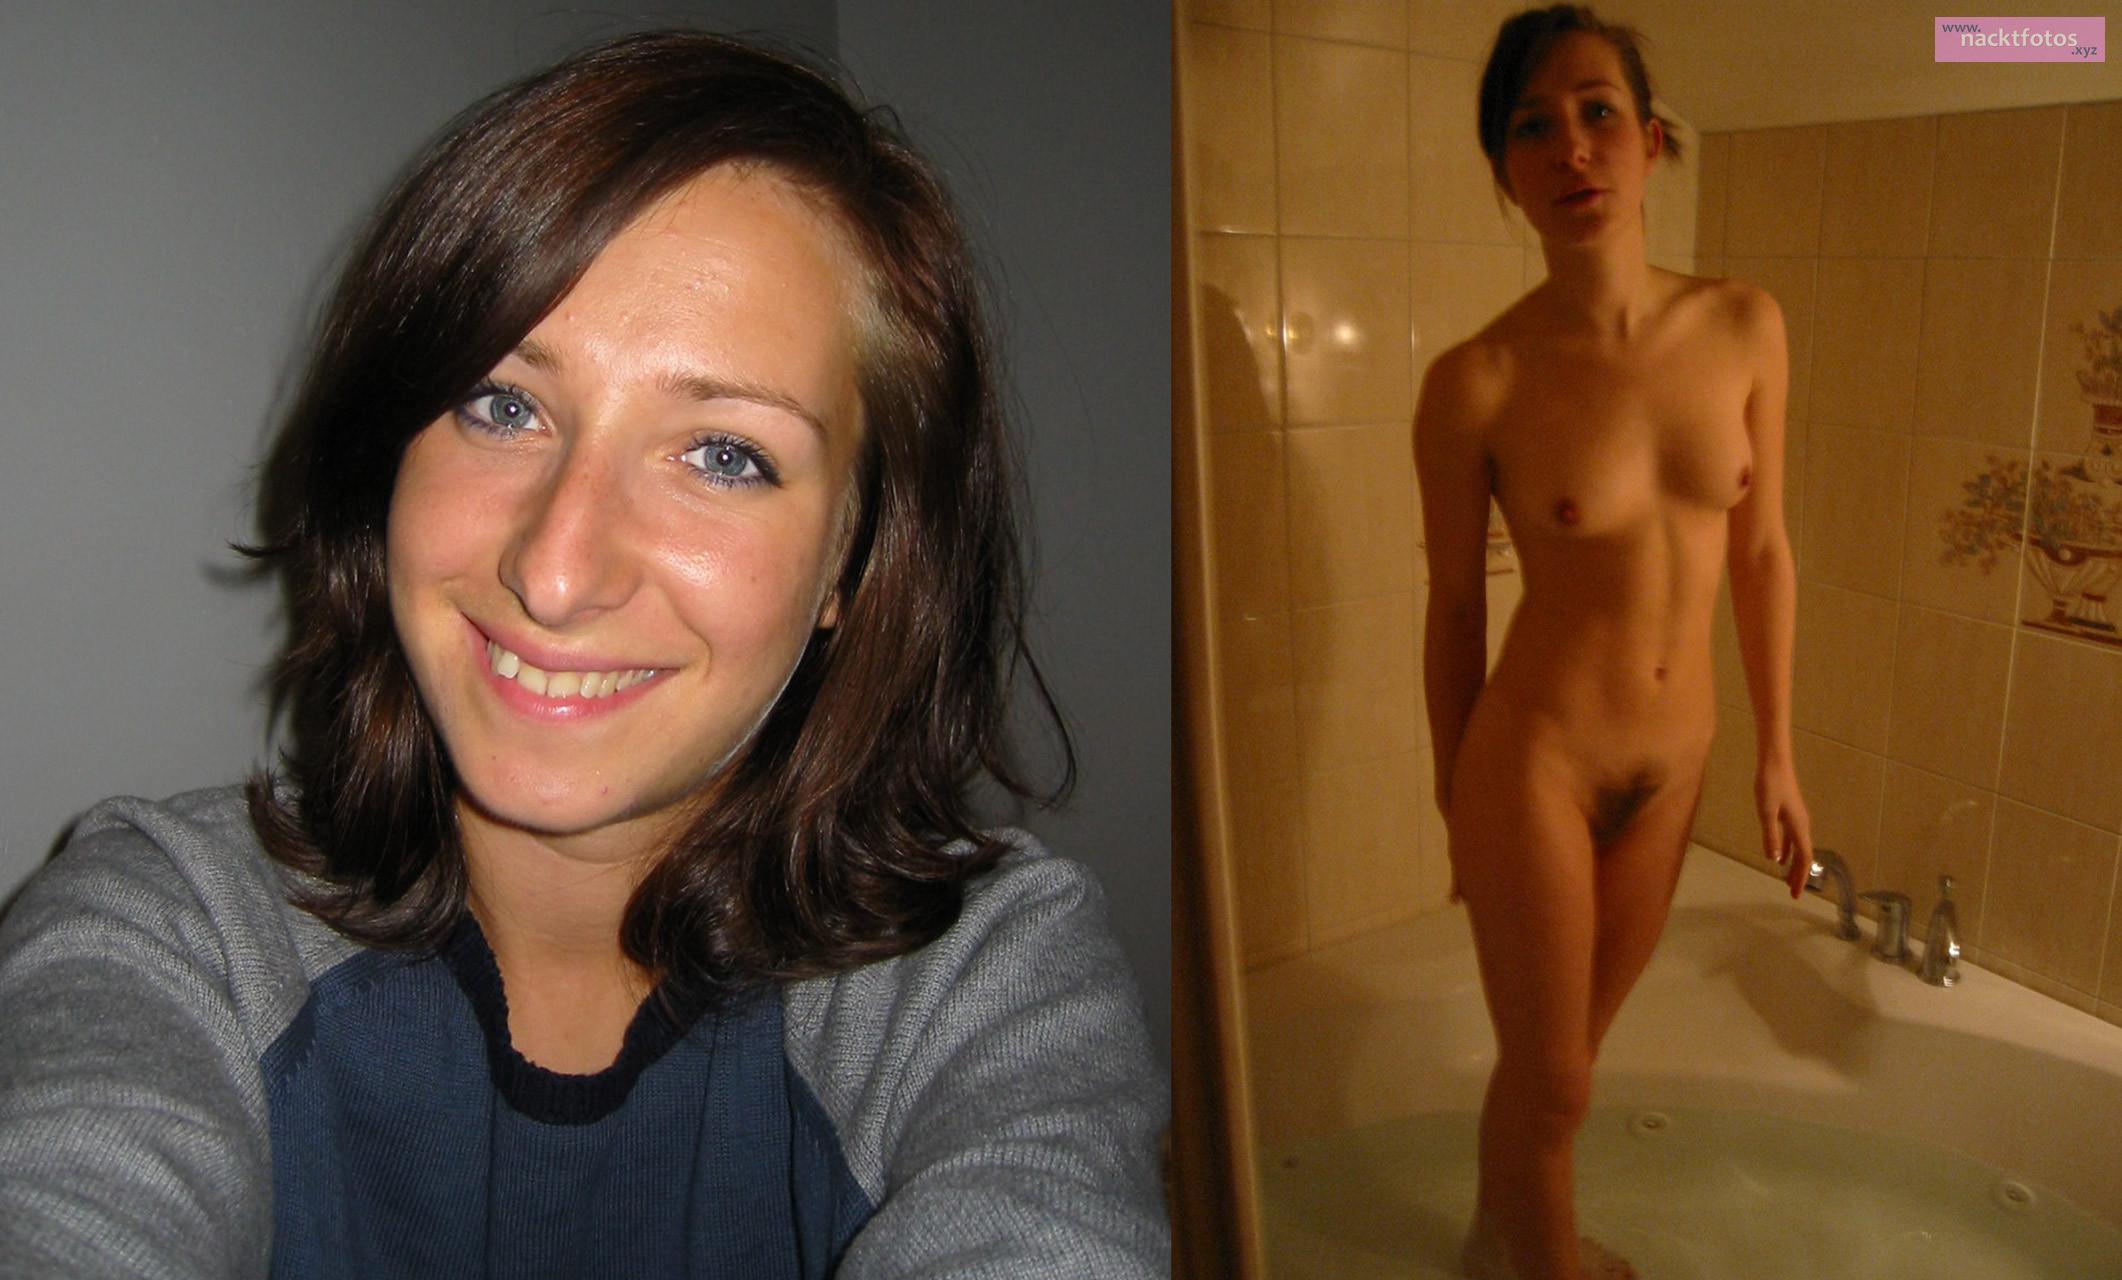 freundin nackt 5 Nacktfotos privat - Intime Momente zu zweit und Nackt-Self...